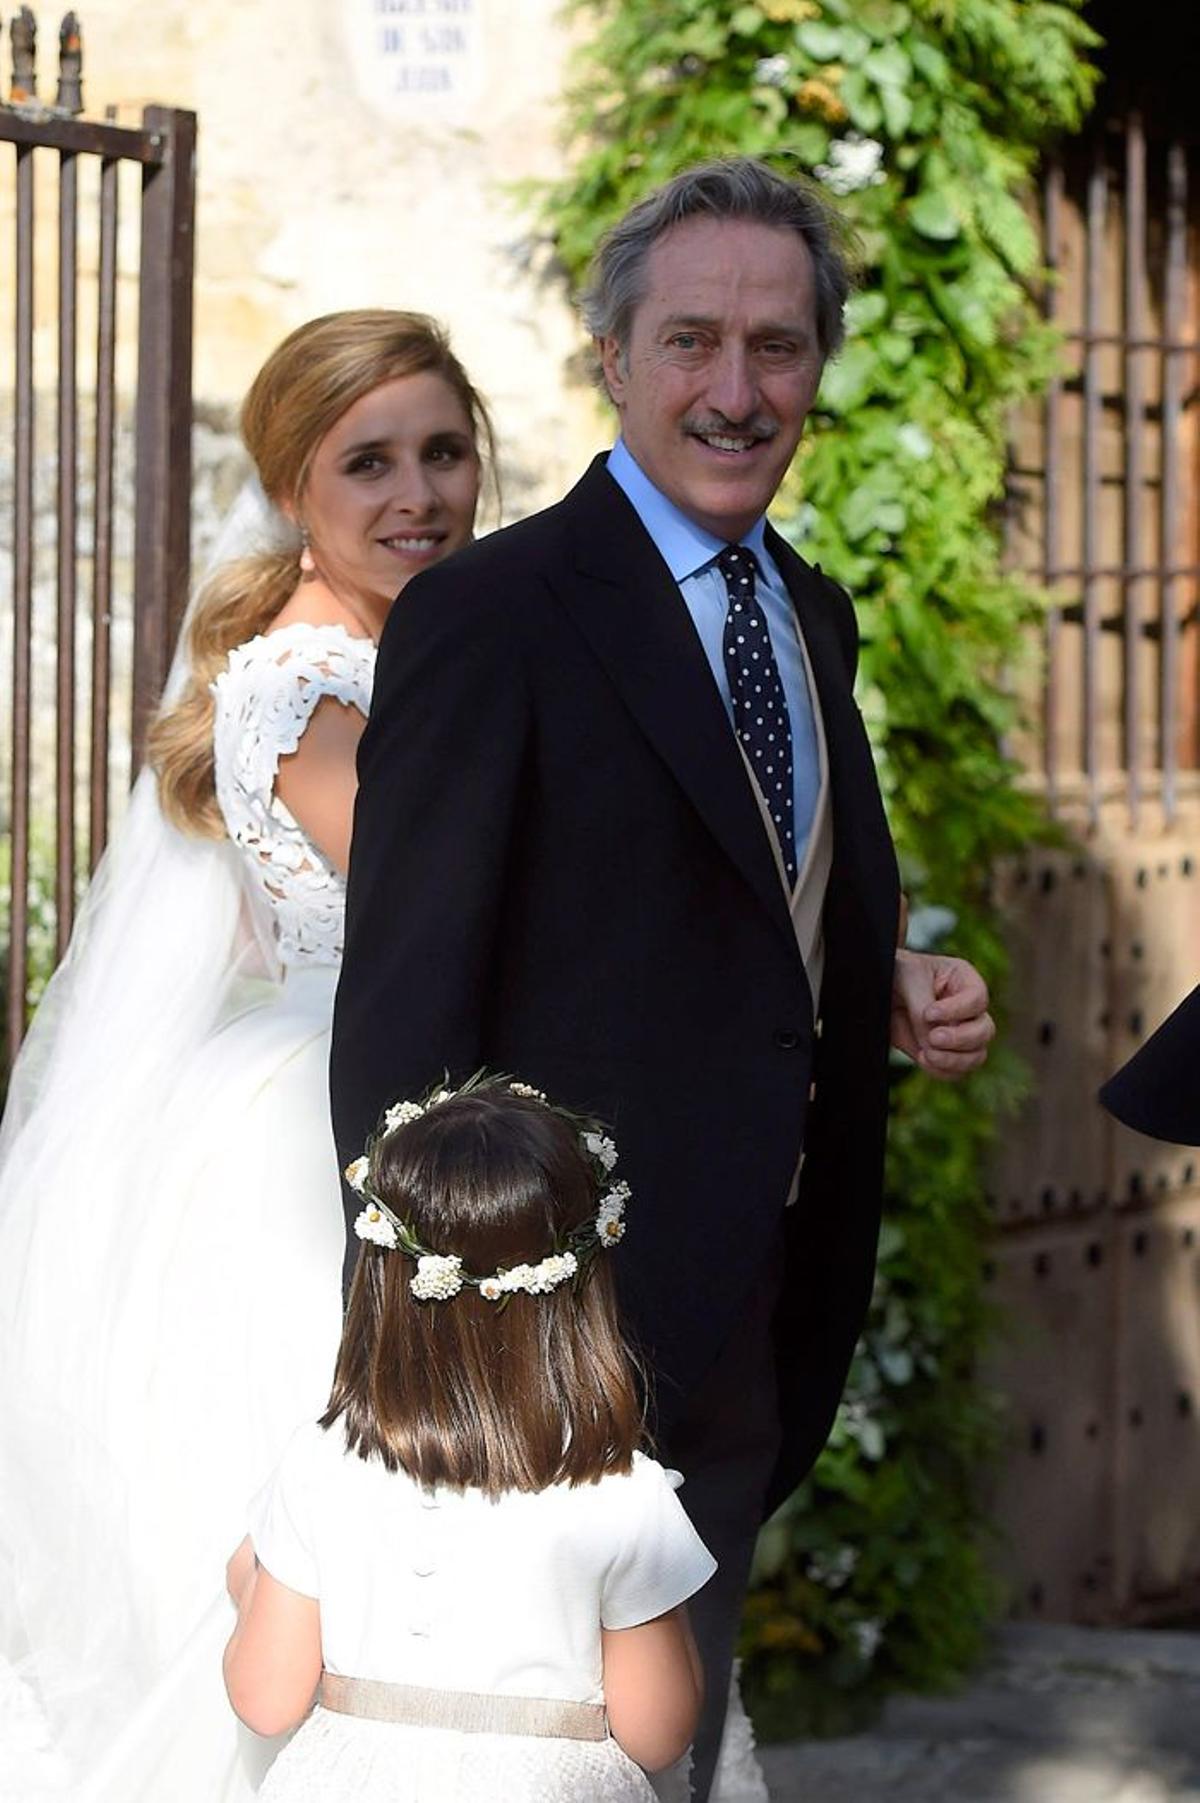 Roberto Torretta, en la boda de su hija María Torretta